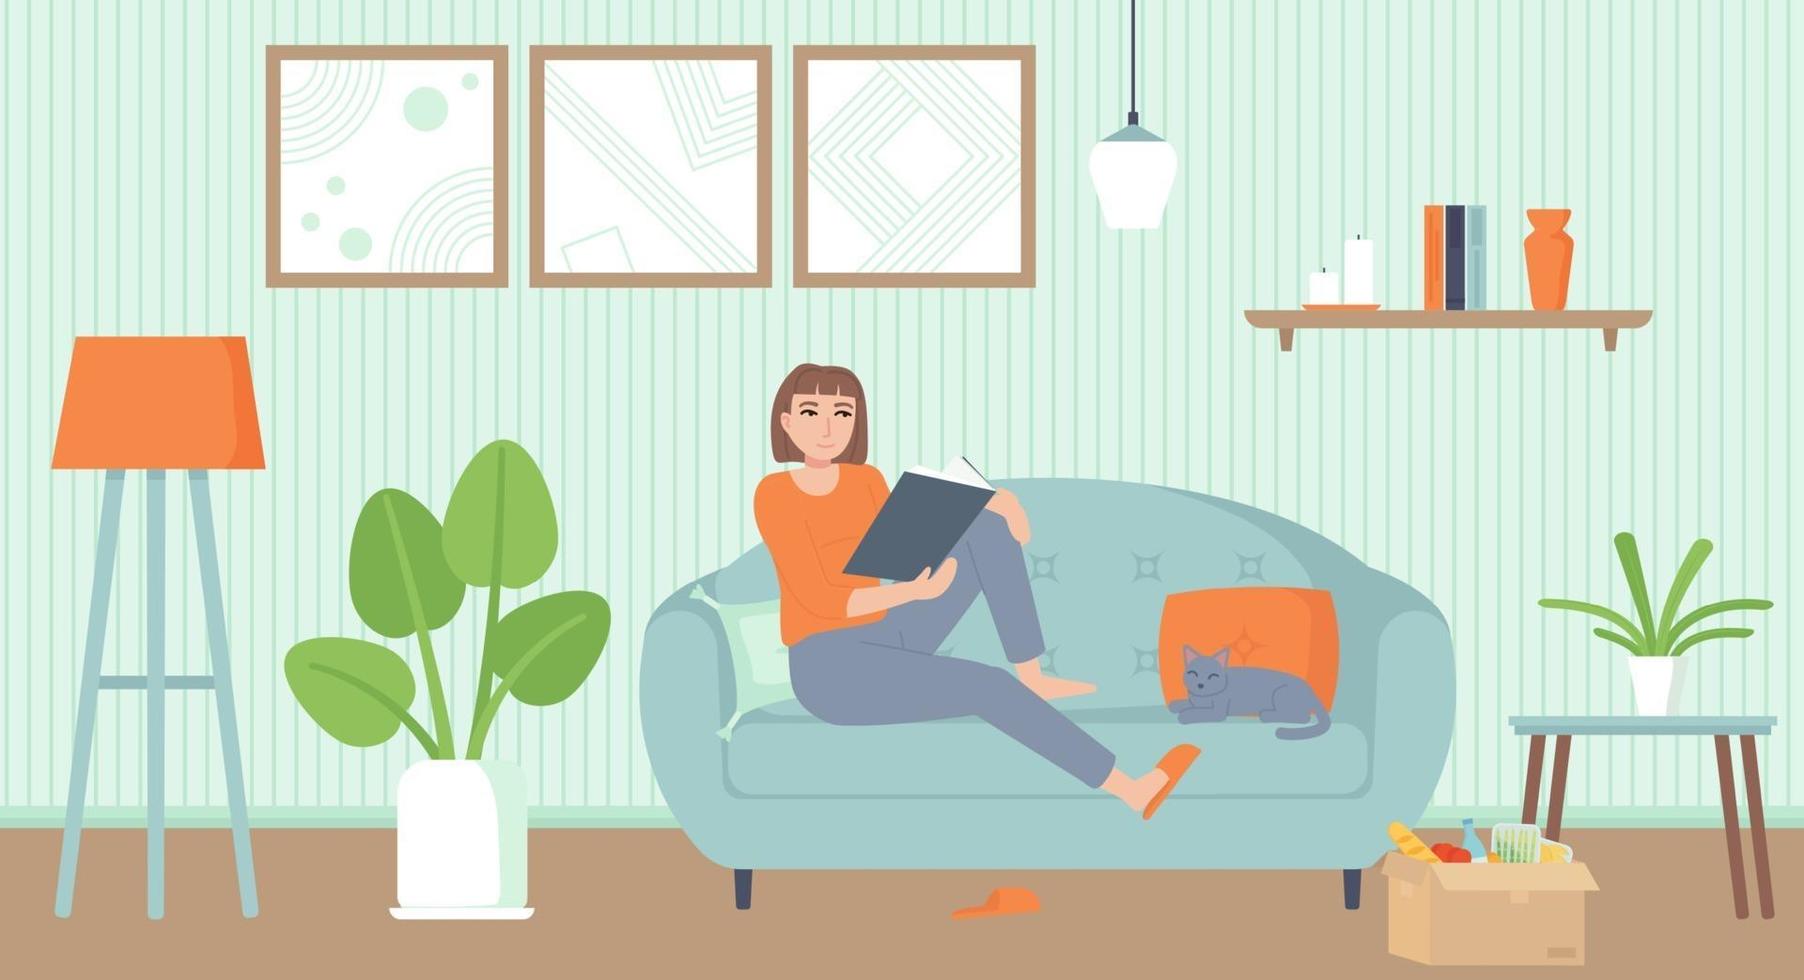 periodo di isolamento di intrattenimento domestico concetto di relax interno accogliente soggiorno con una ragazza gatto sul divano leggendo un libro stock illustrazione vettoriale in stile piatto del fumetto